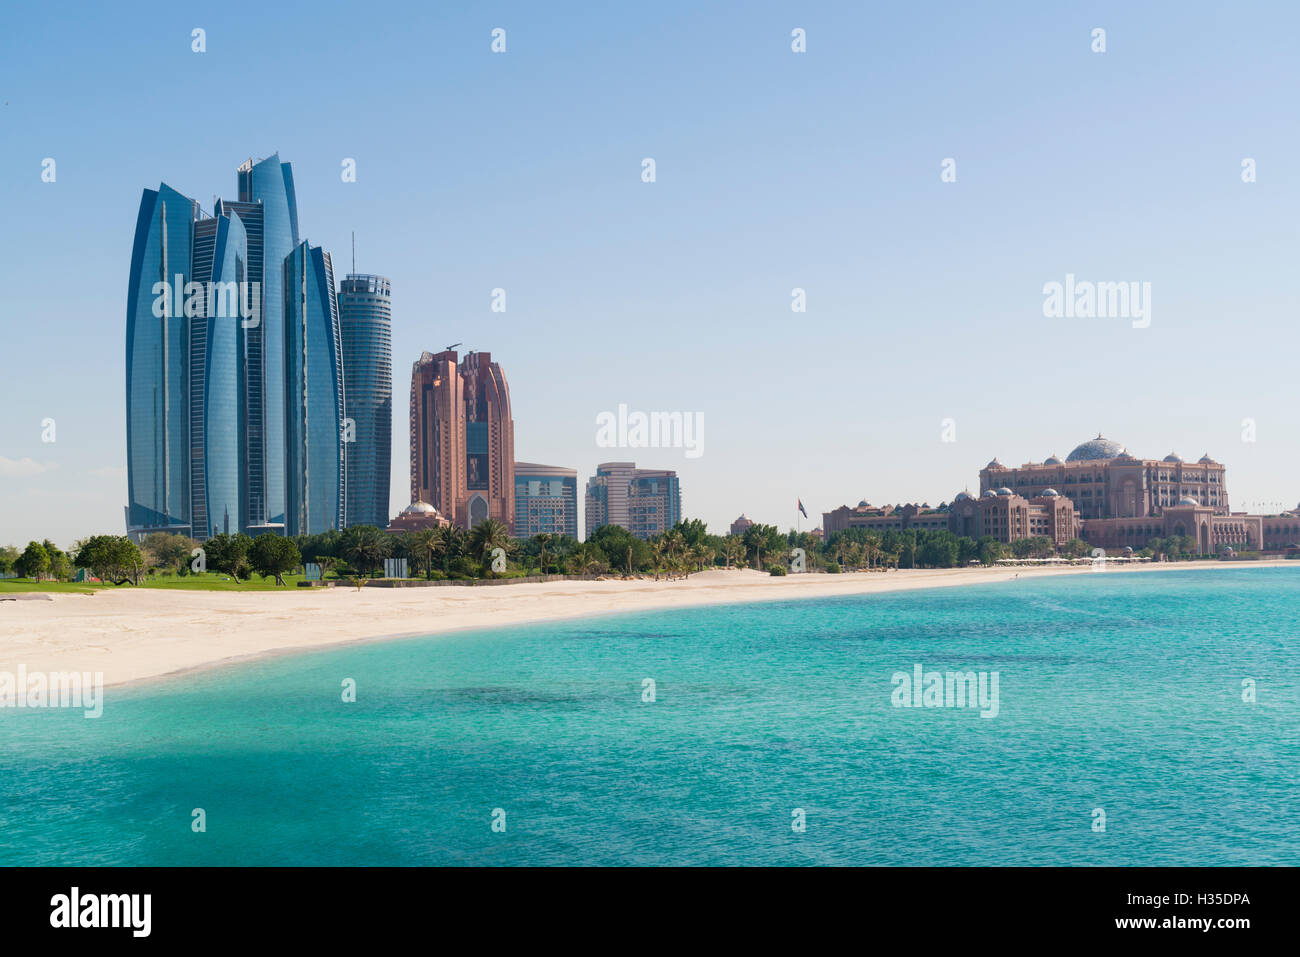 Etihad Towers, Emirates Palace Hotel and beach, Abu Dhabi, United Arab Emirates, Middle East Stock Photo